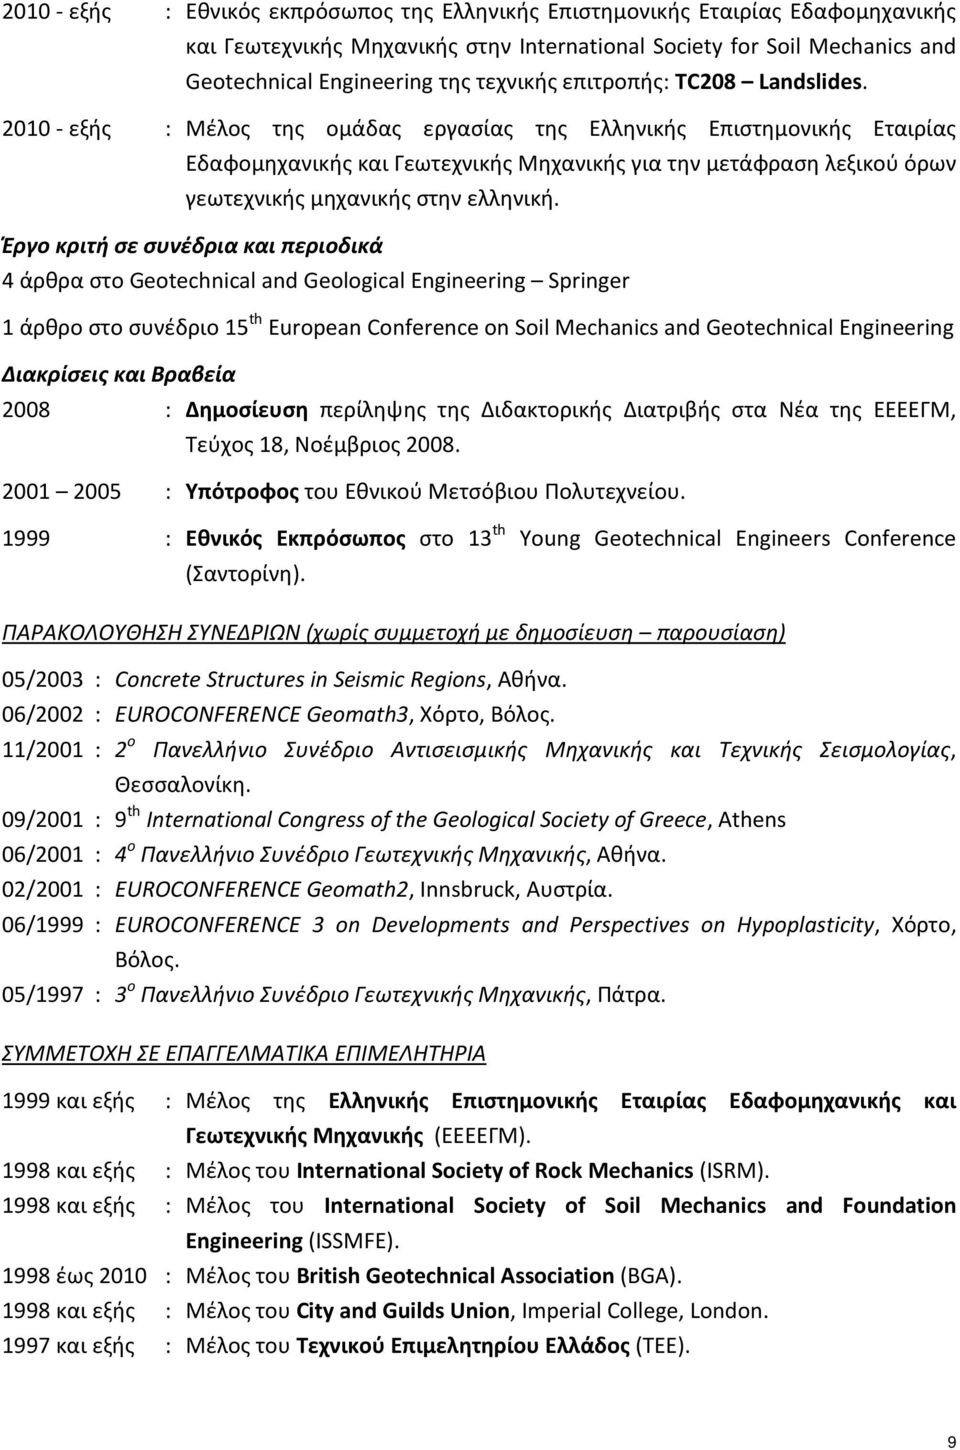 2010 - εξής : Μέλος της ομάδας εργασίας της Ελληνικής Επιστημονικής Εταιρίας Εδαφομηχανικής και Γεωτεχνικής Μηχανικής για την μετάφραση λεξικού όρων γεωτεχνικής μηχανικής στην ελληνική.